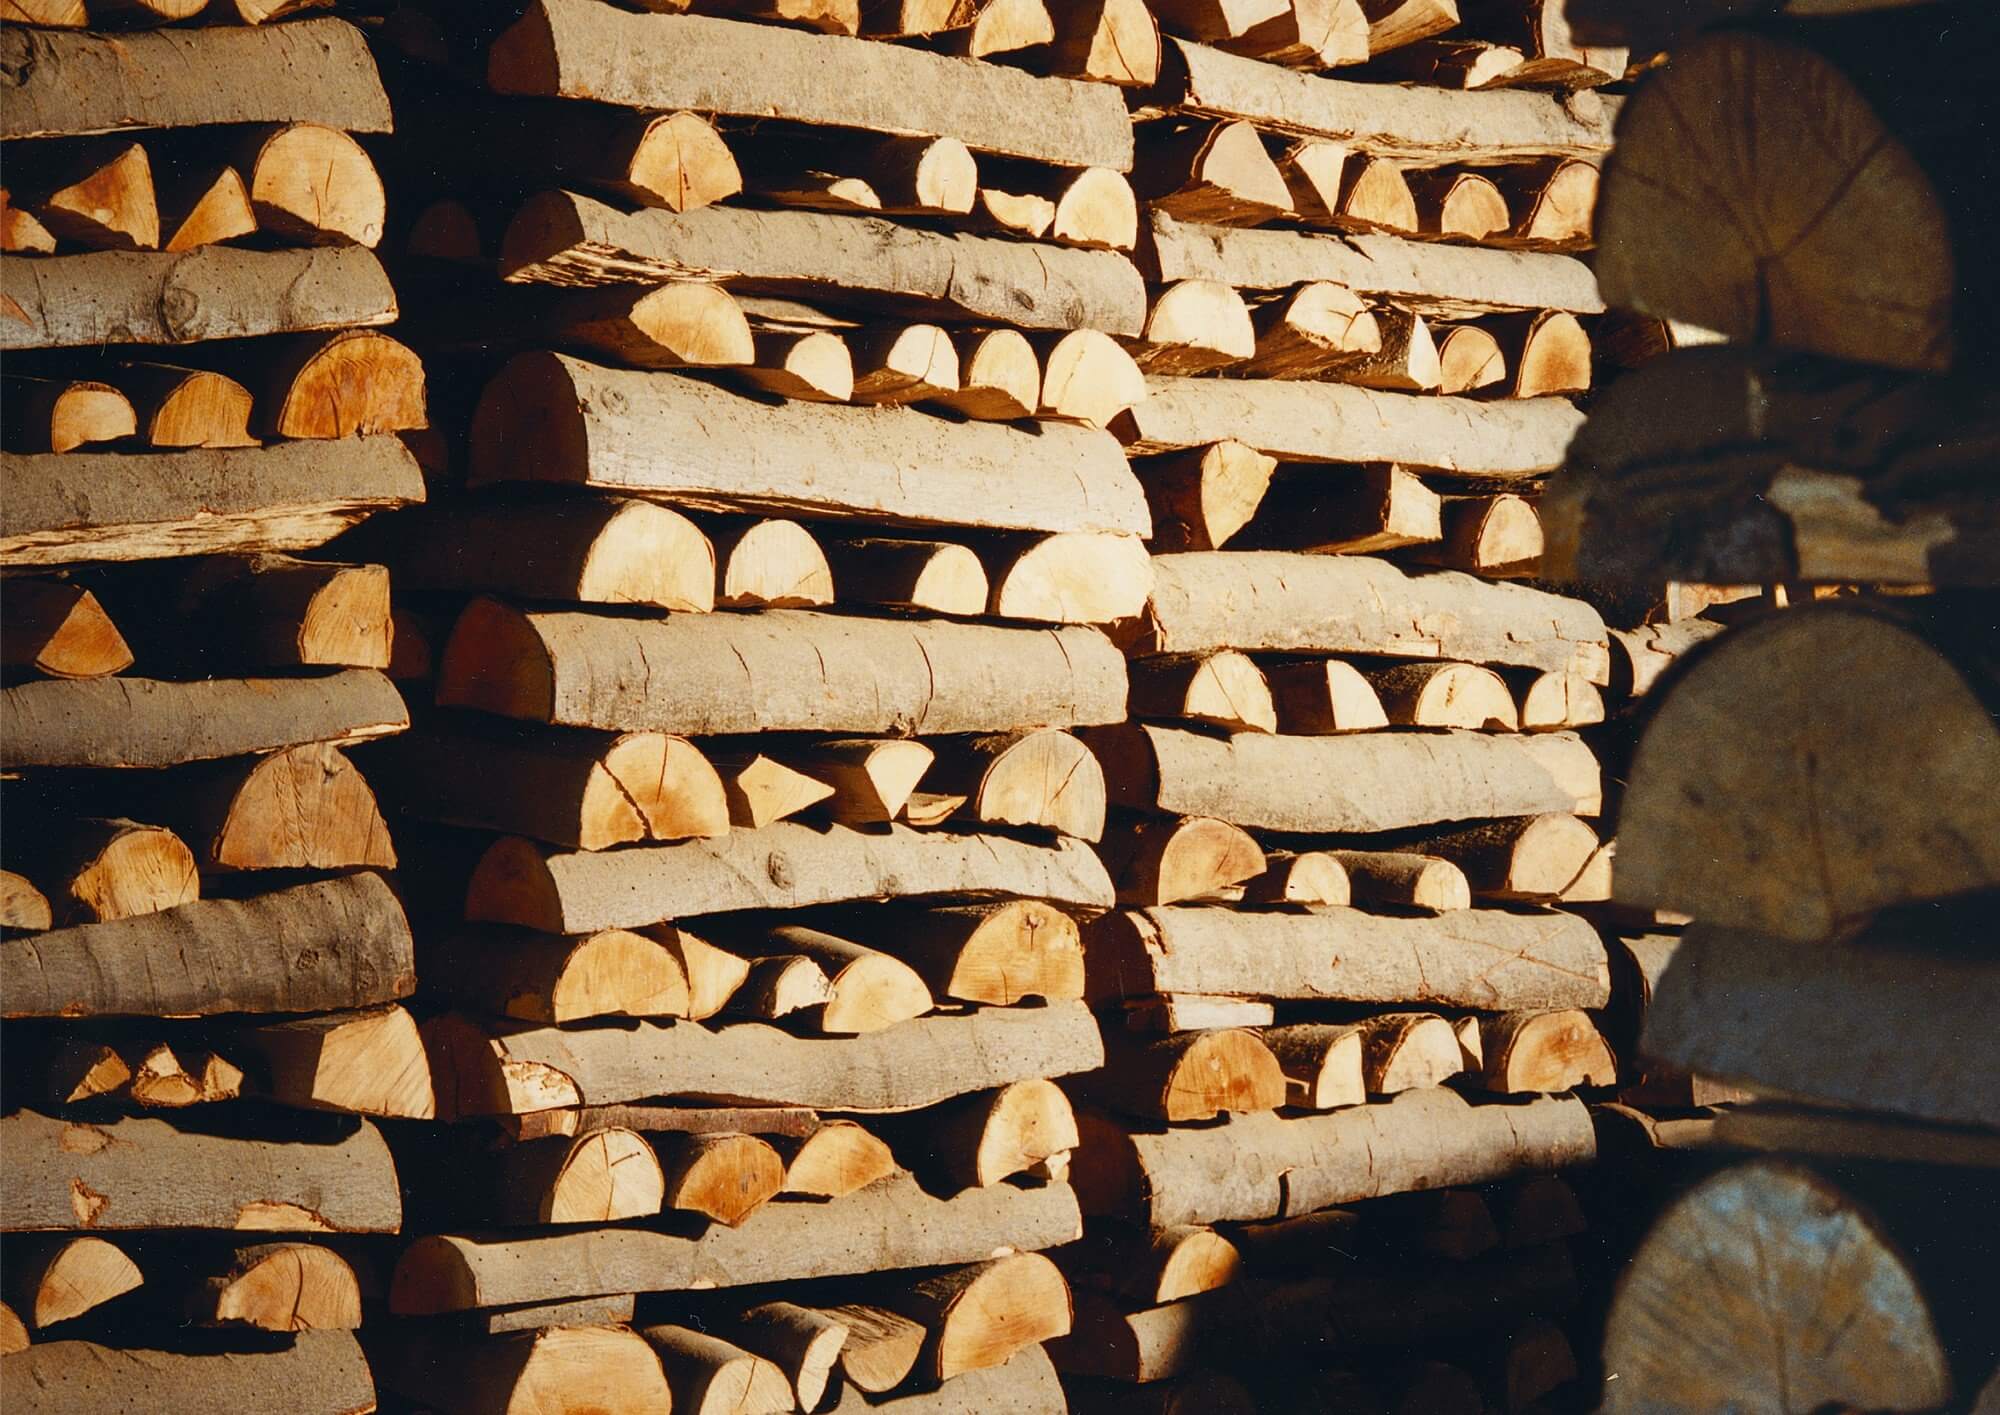 schlenkerla-rauchbier-buchenholzlagerung-2000x1415.jpg